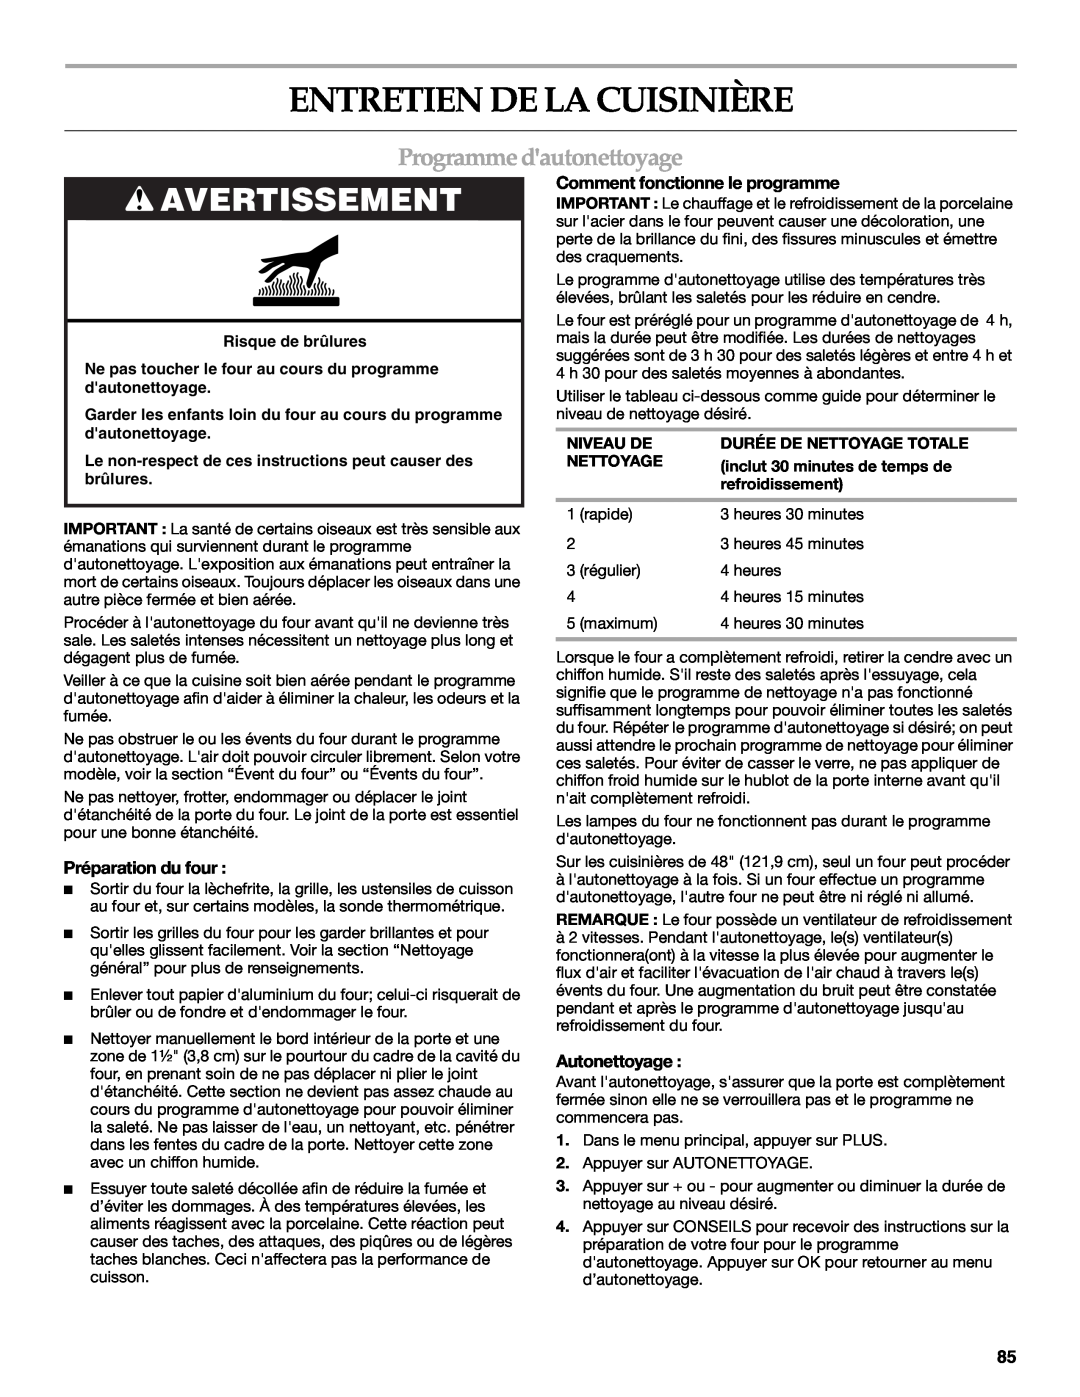 KitchenAid KDRU763.KDRU manual Entretien De La Cuisinière, Programme dautonettoyage, Avertissement, Préparation du four 